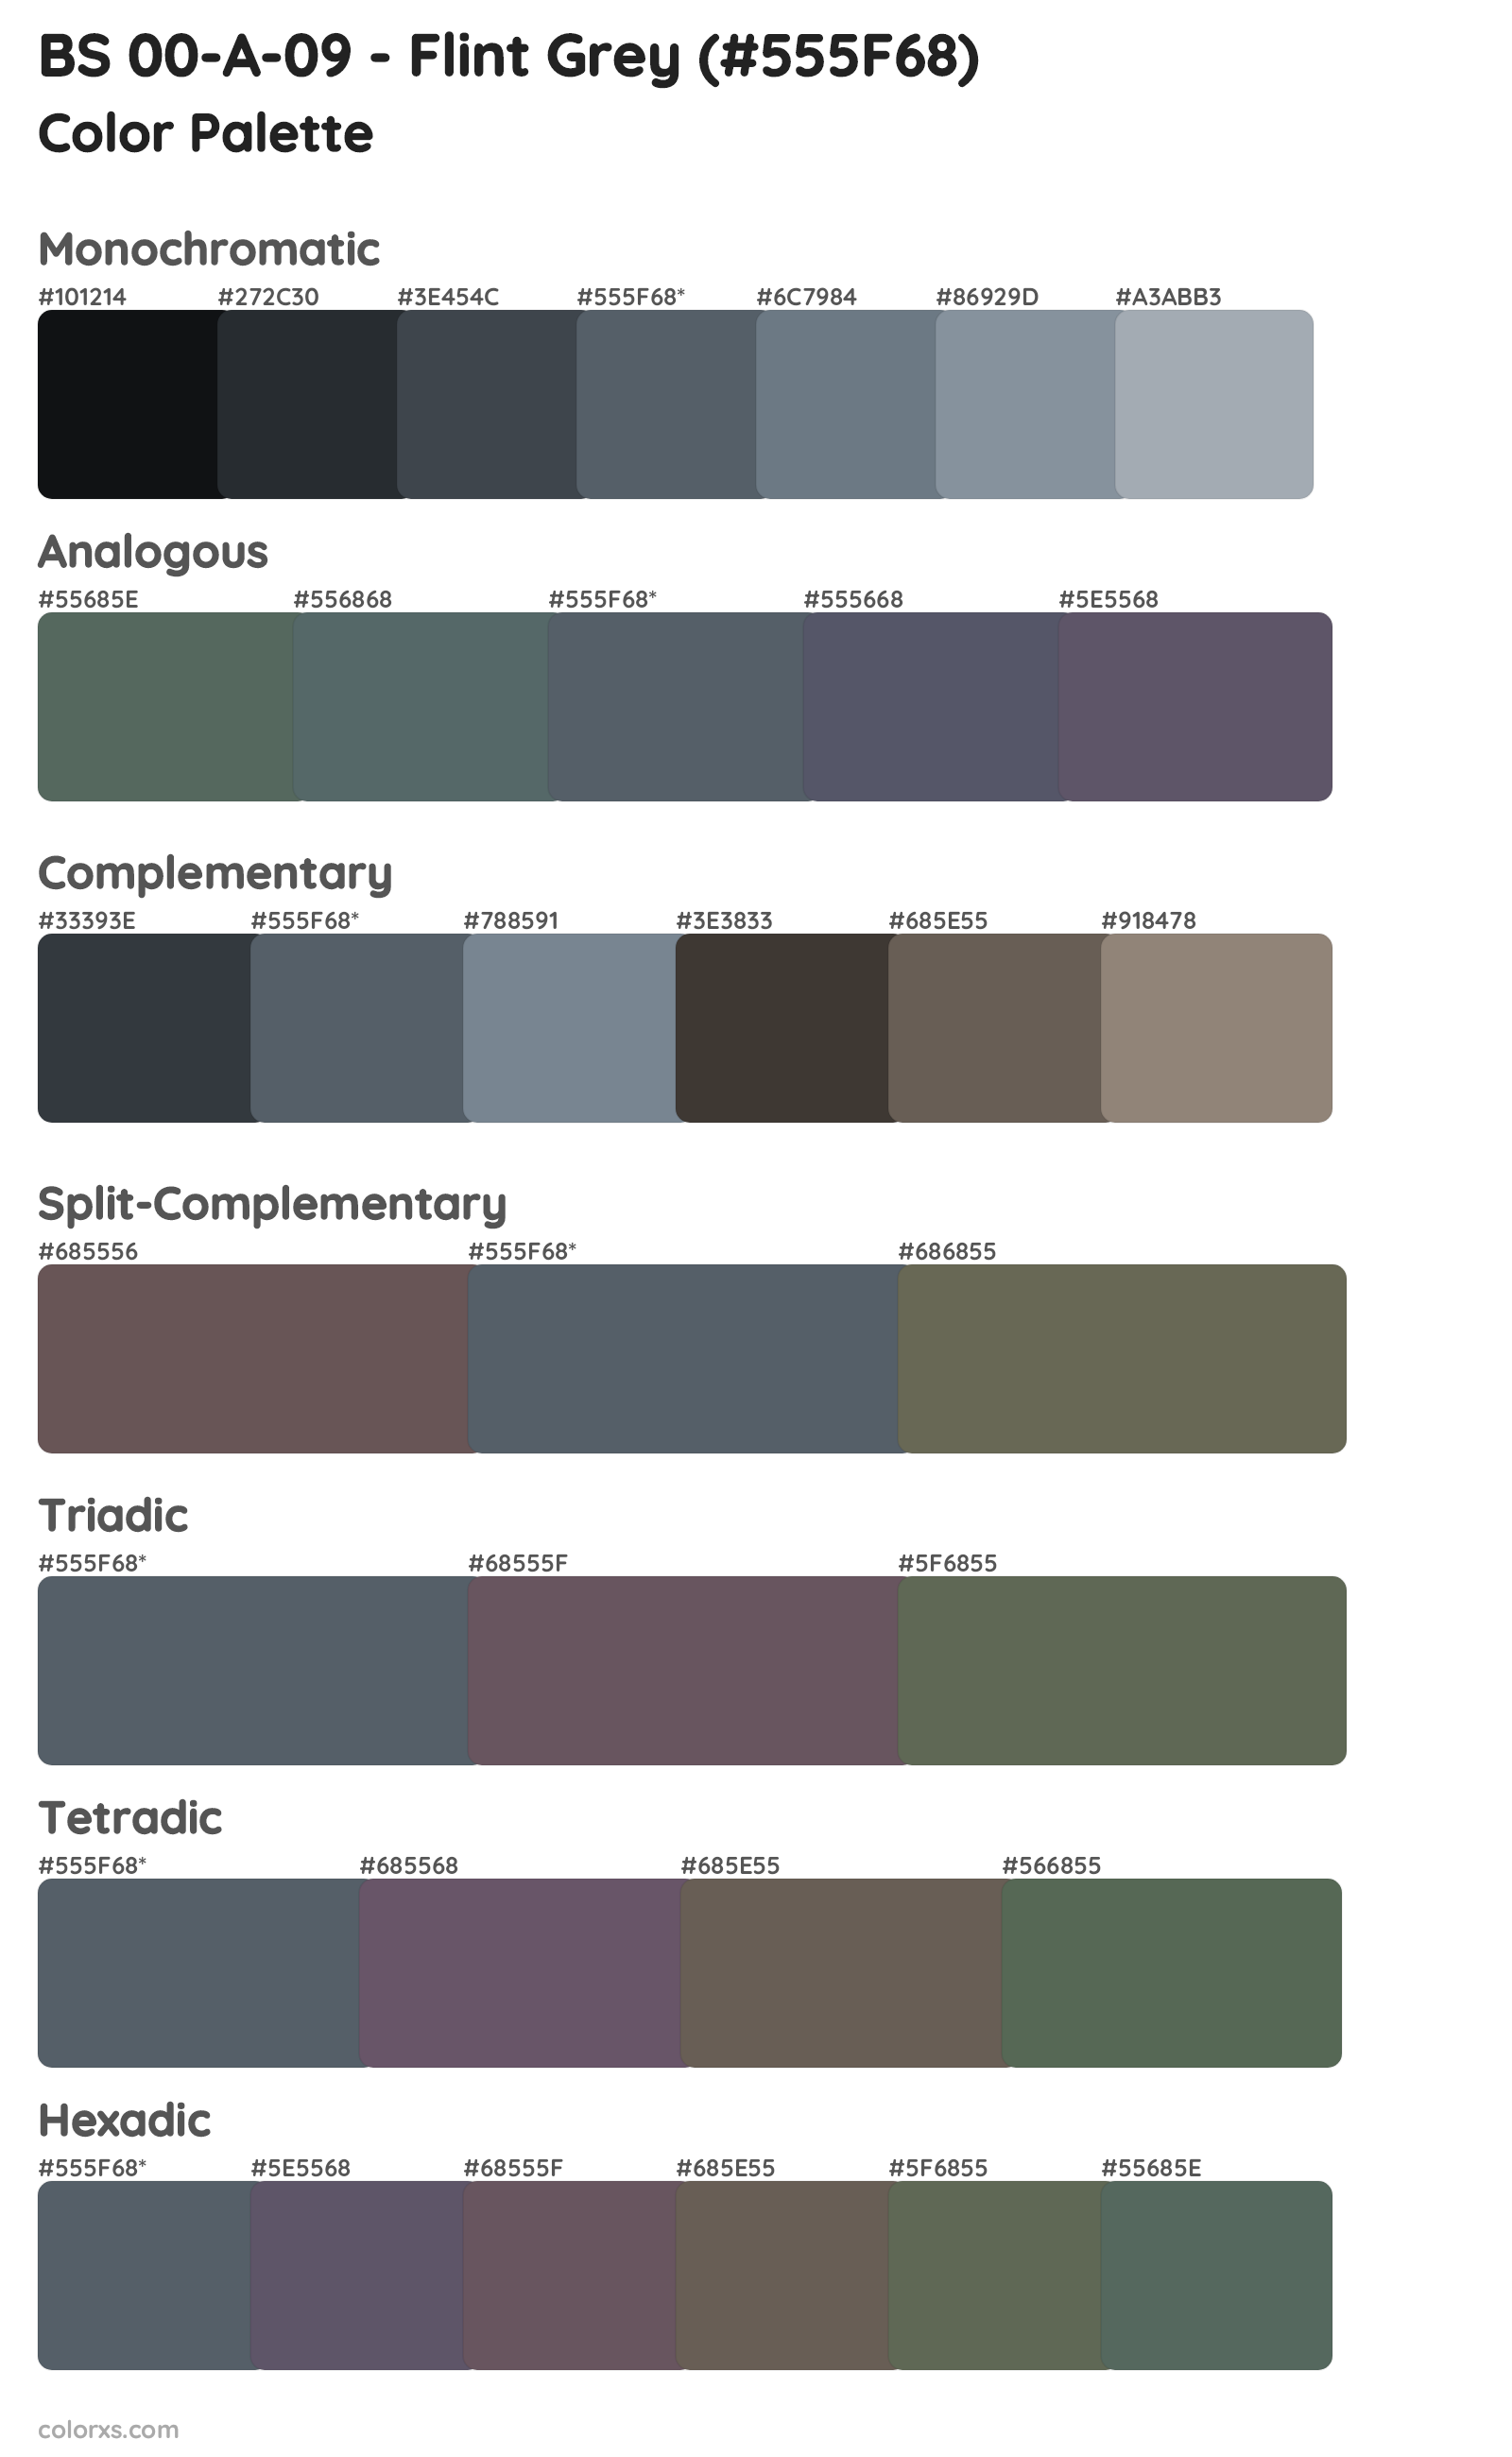 BS 00-A-09 - Flint Grey Color Scheme Palettes